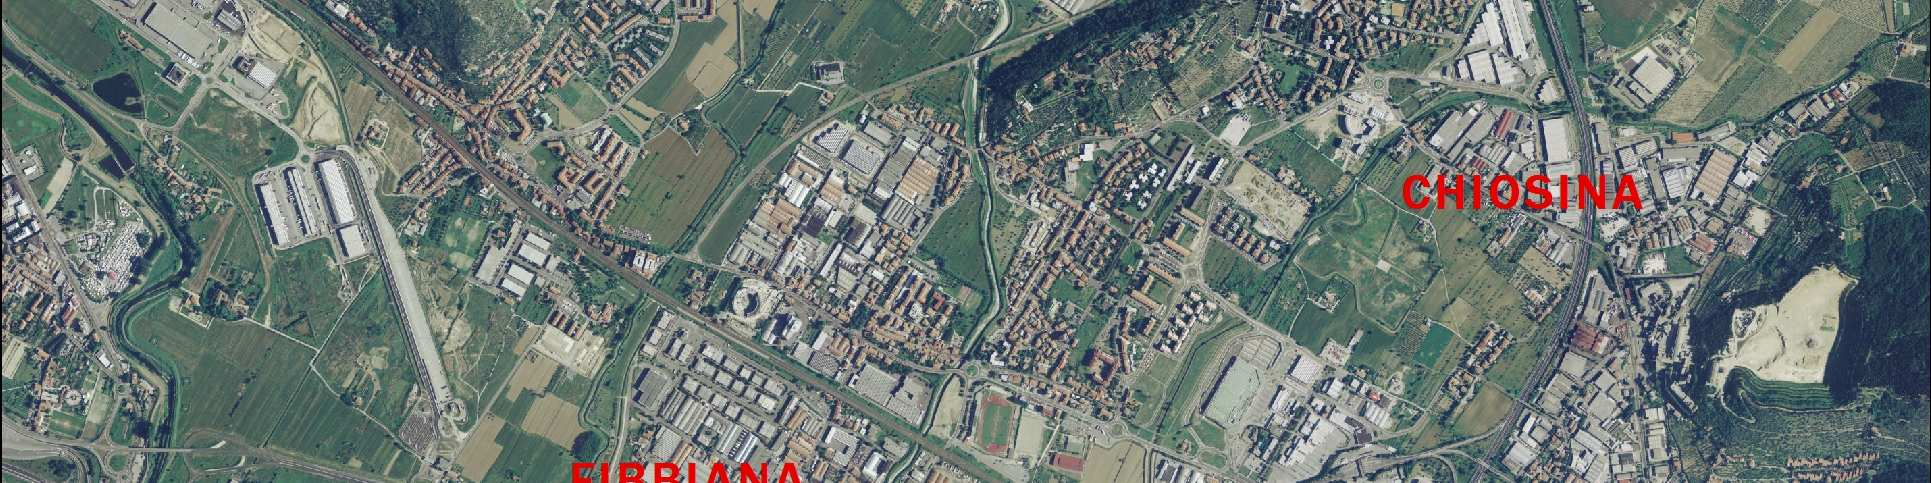 al confine con il Comune di Campi Bisenzio; - area industriale e commerciale di Settimello, posta nel comune di Calenzano, caratterizzata dalla